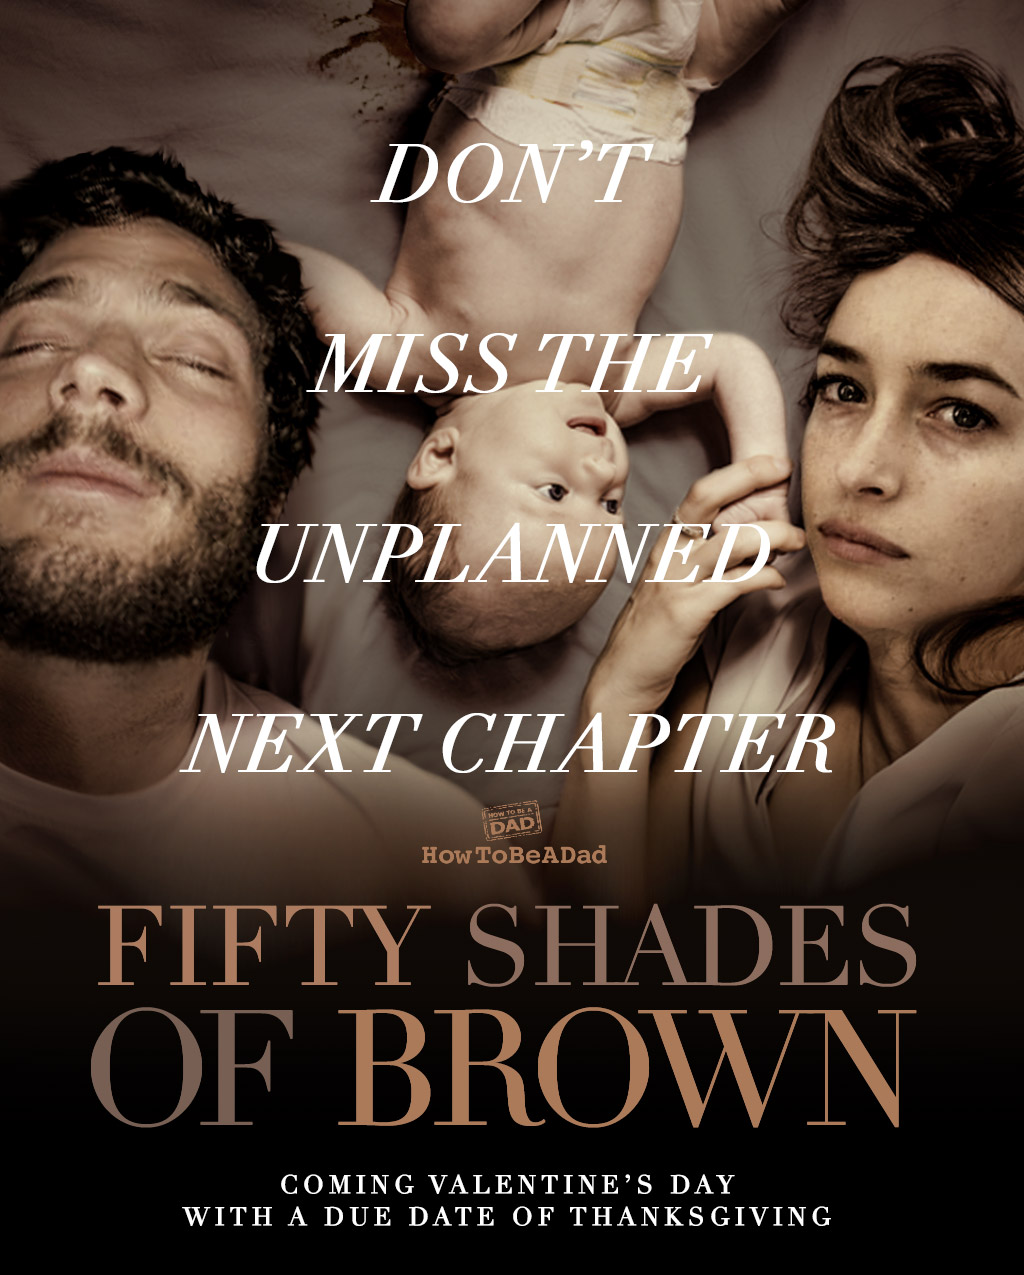 50 Shades of Grey Parody 50 Shades of Brown Poster